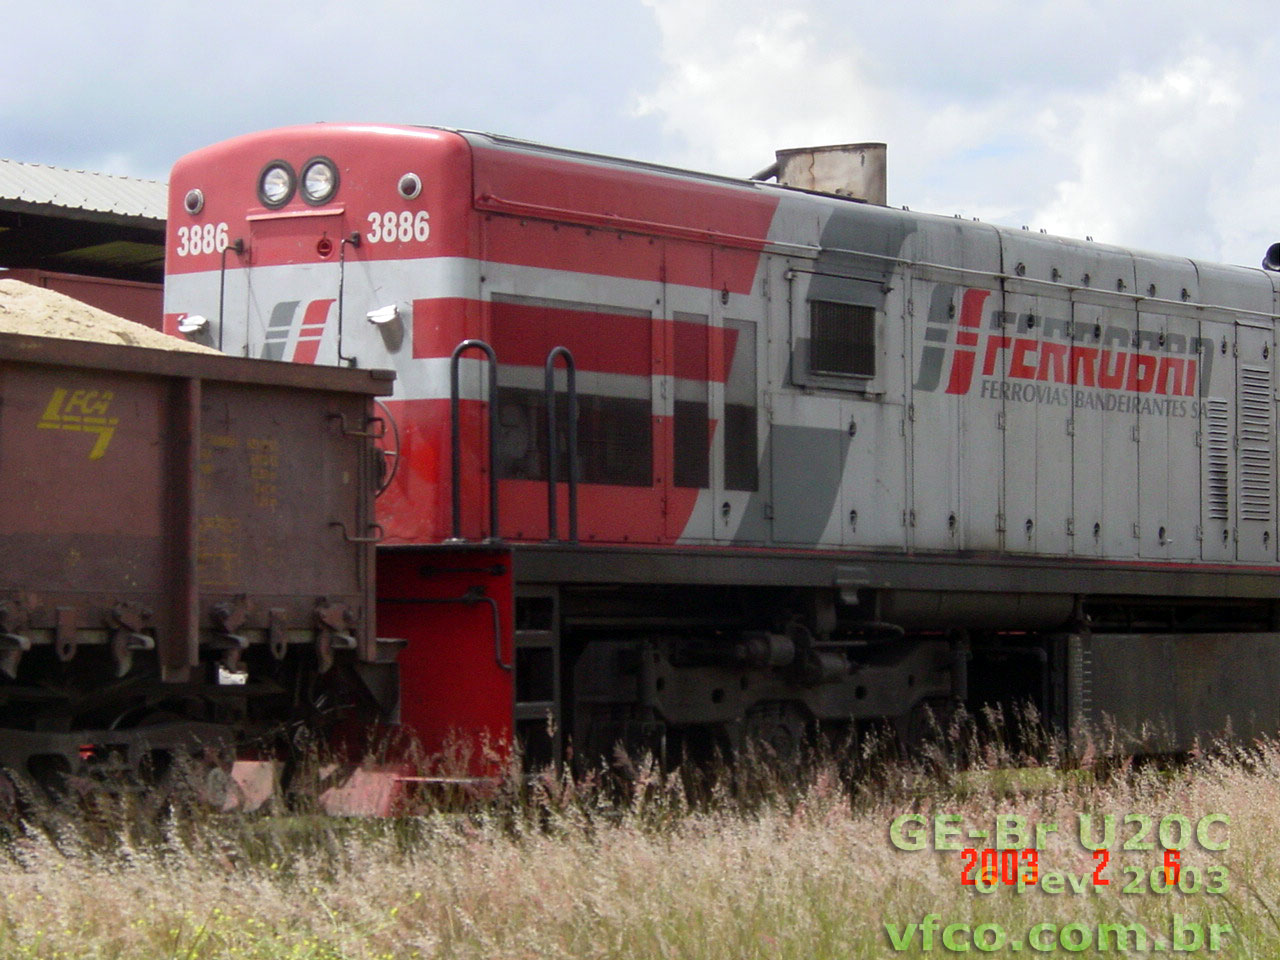 Locomotiva U20C nº 3886 FCA - Ferrovia Centro-Atlântica, ainda com a pintura Ferroban (2003), chegando à estação de Brasília com um trem de areia